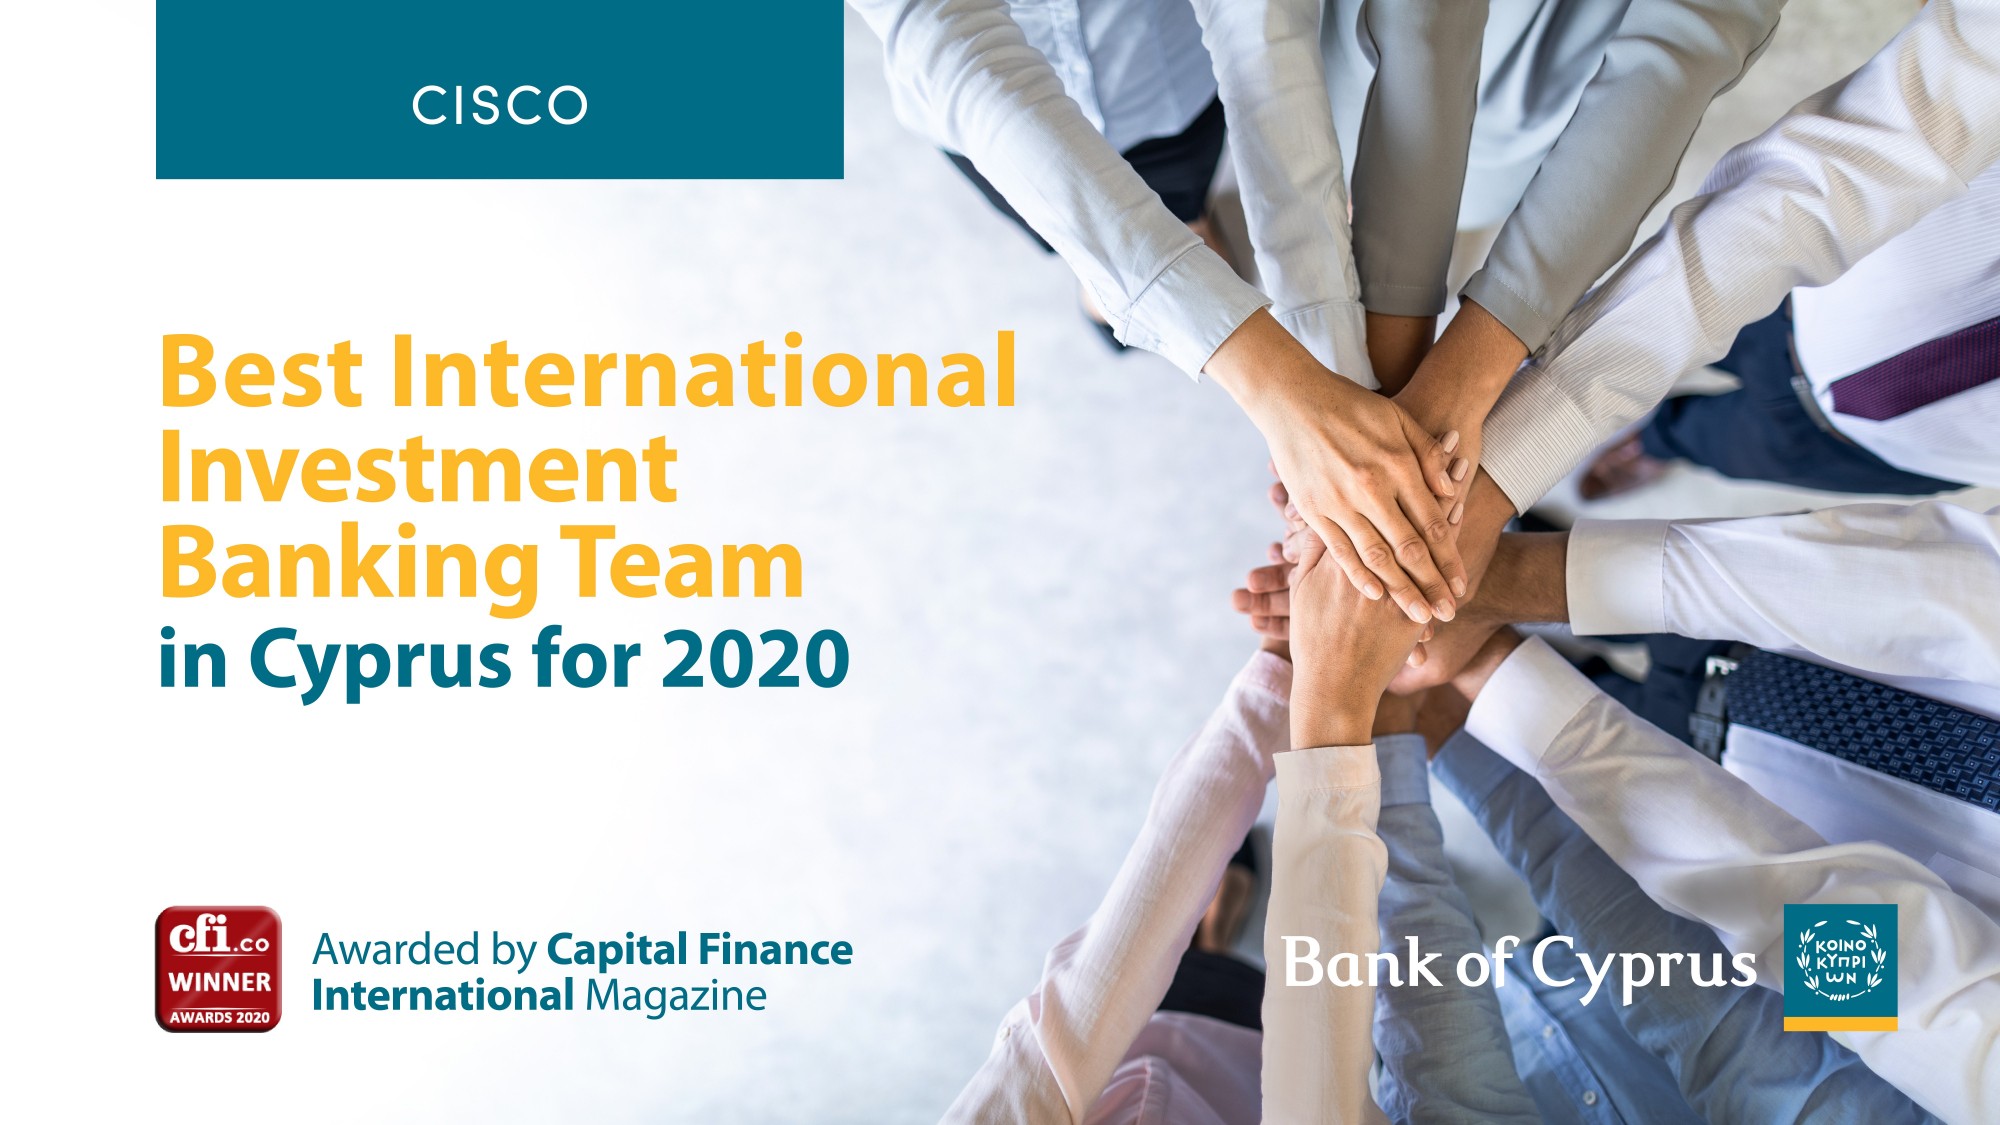 Η ομάδα της CISCO βραβεύεται ως η καλύτερη διεθνής ομάδα στον τομέα της Επενδυτικής Τραπεζικής στην Κύπρο για το 2020